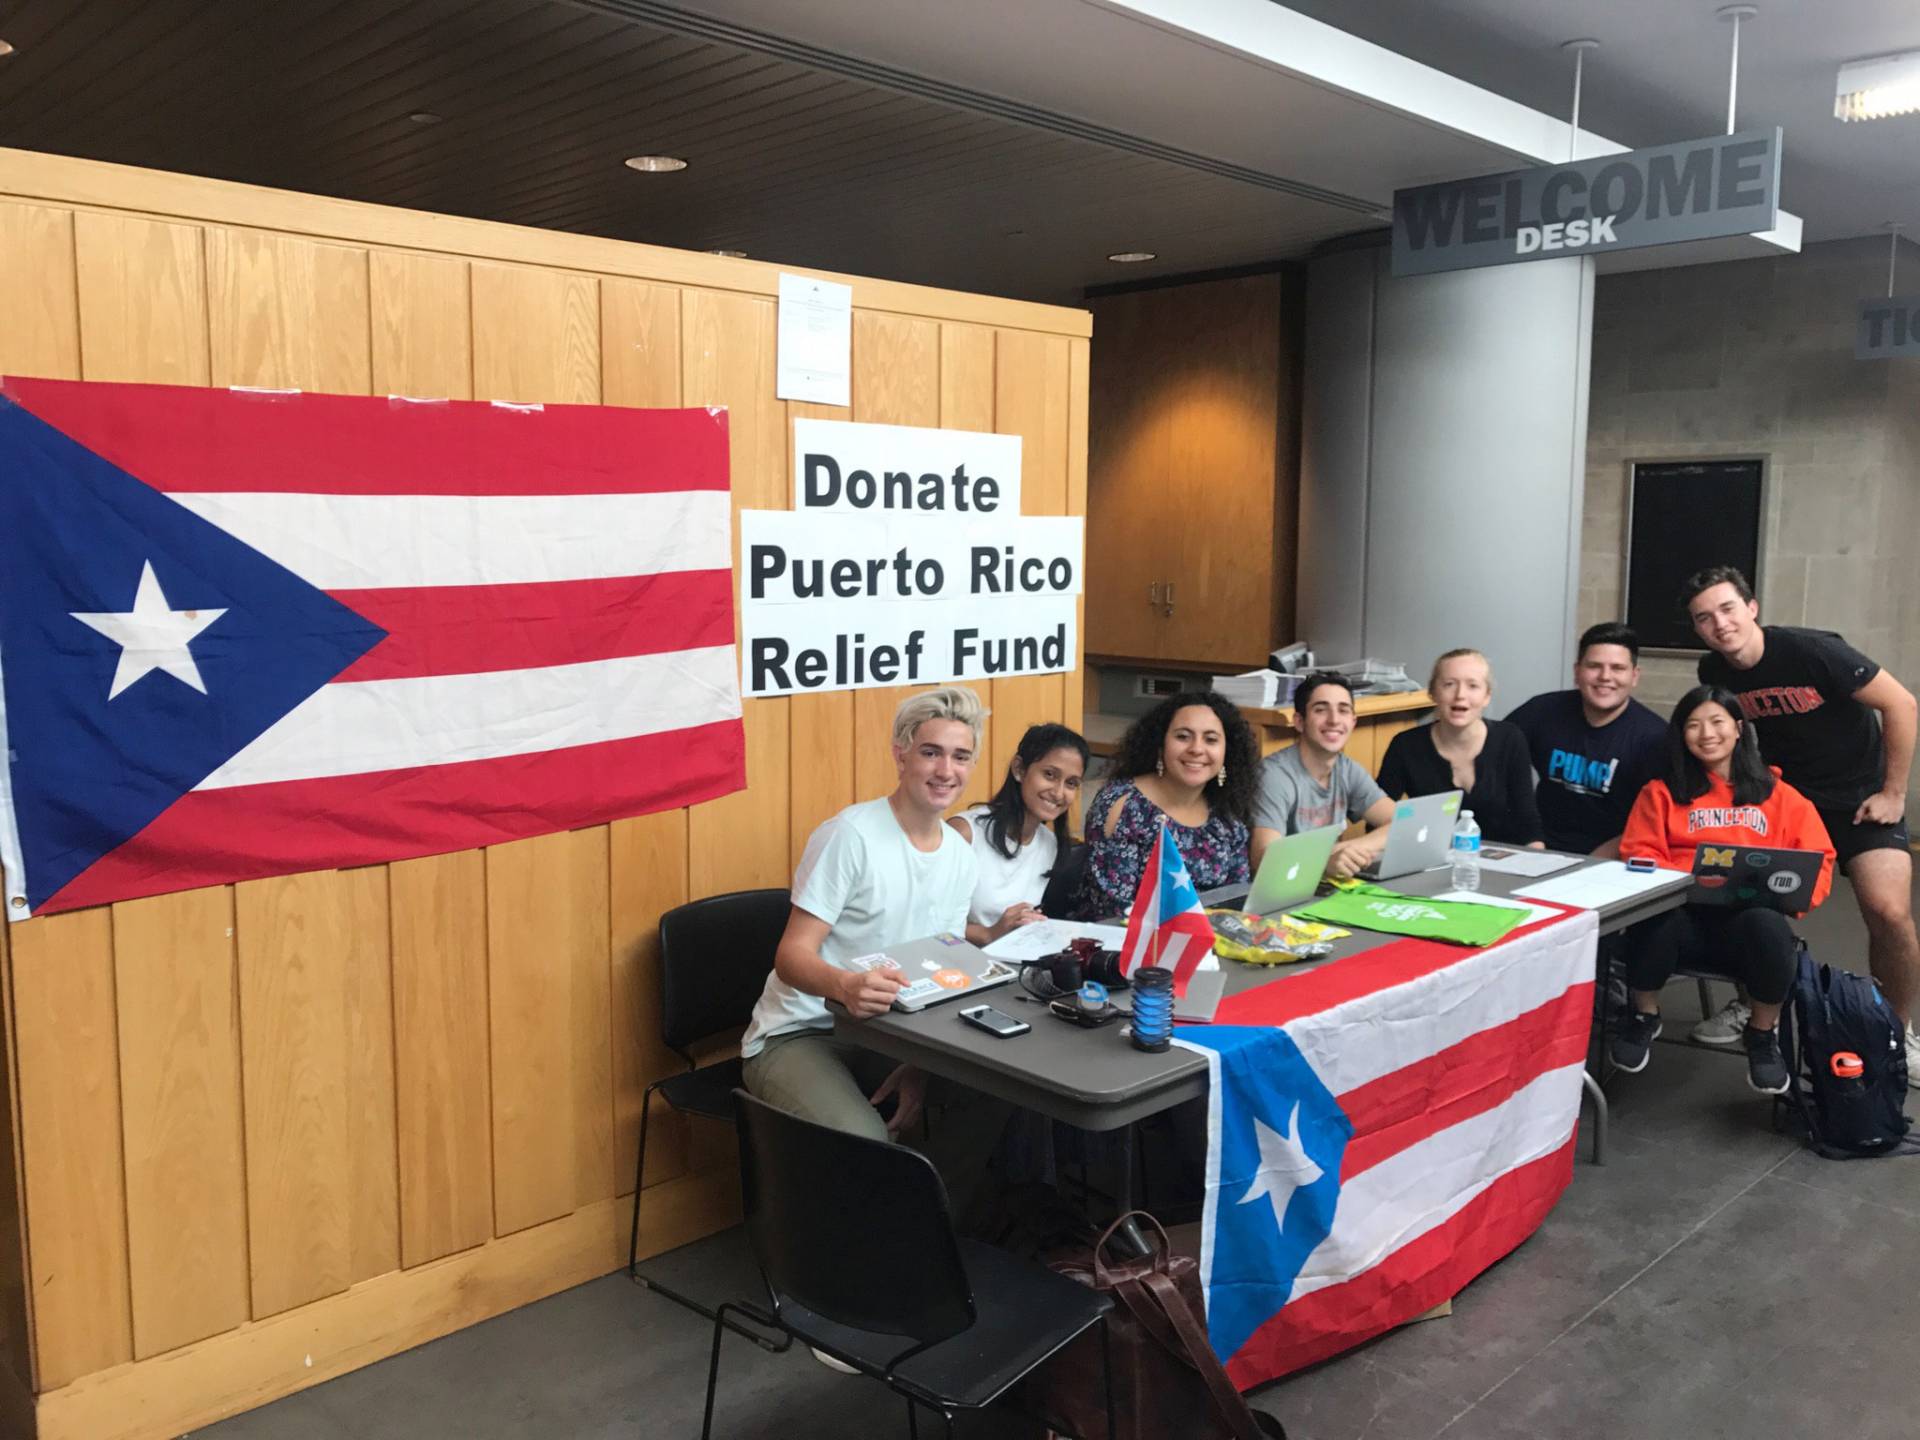 Puerto Rico fundraiser at Frist